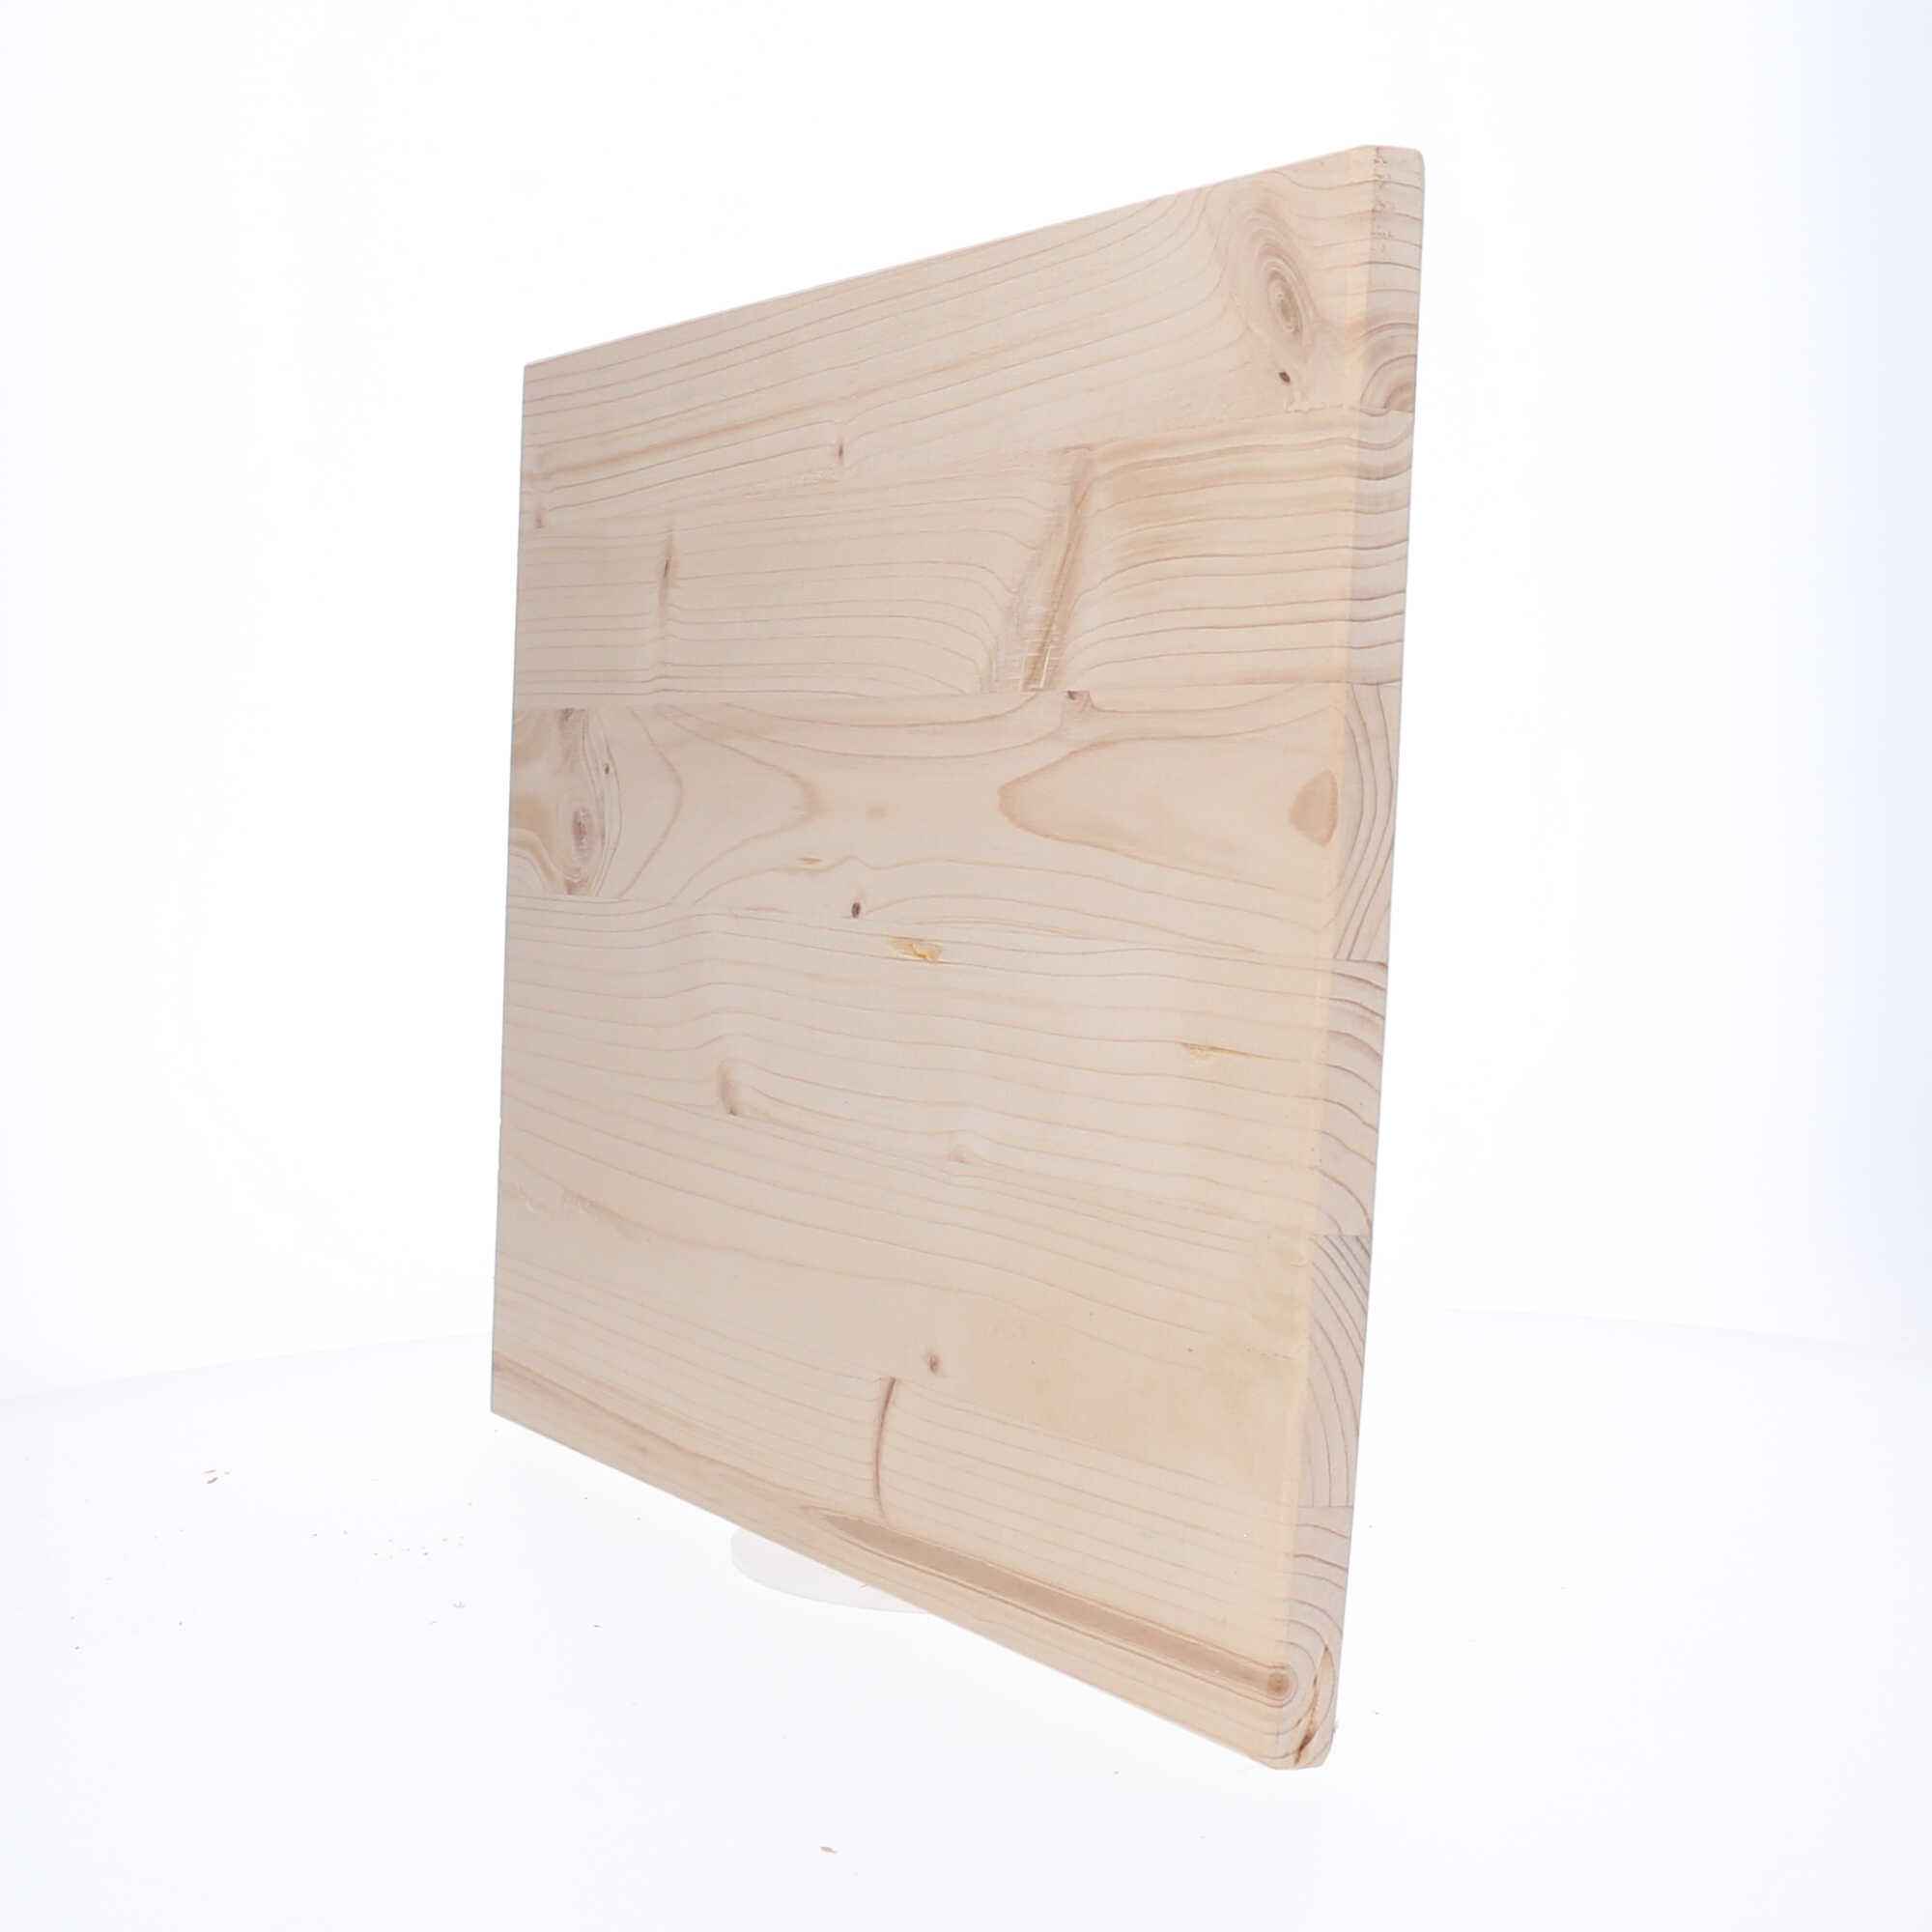 Einfache Schilder aus hellem Holz mit personalisierter Gravur flexibel einsetzbar